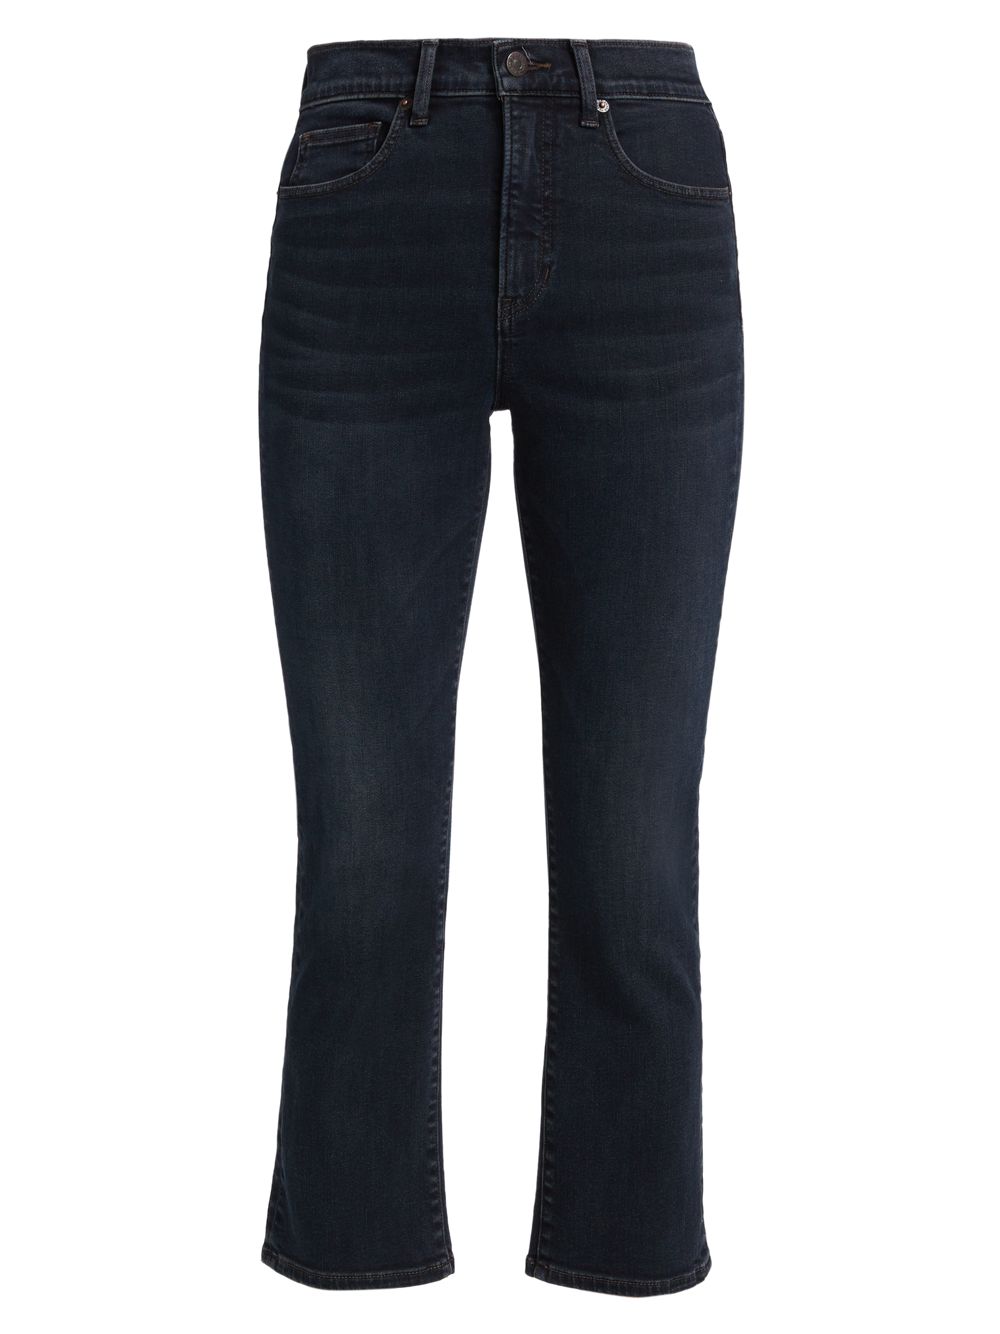 Эластичные расклешенные джинсы Carly с высокой посадкой Veronica Beard расклешенные джинсы carly со средней посадкой veronica beard цвет sierra blue